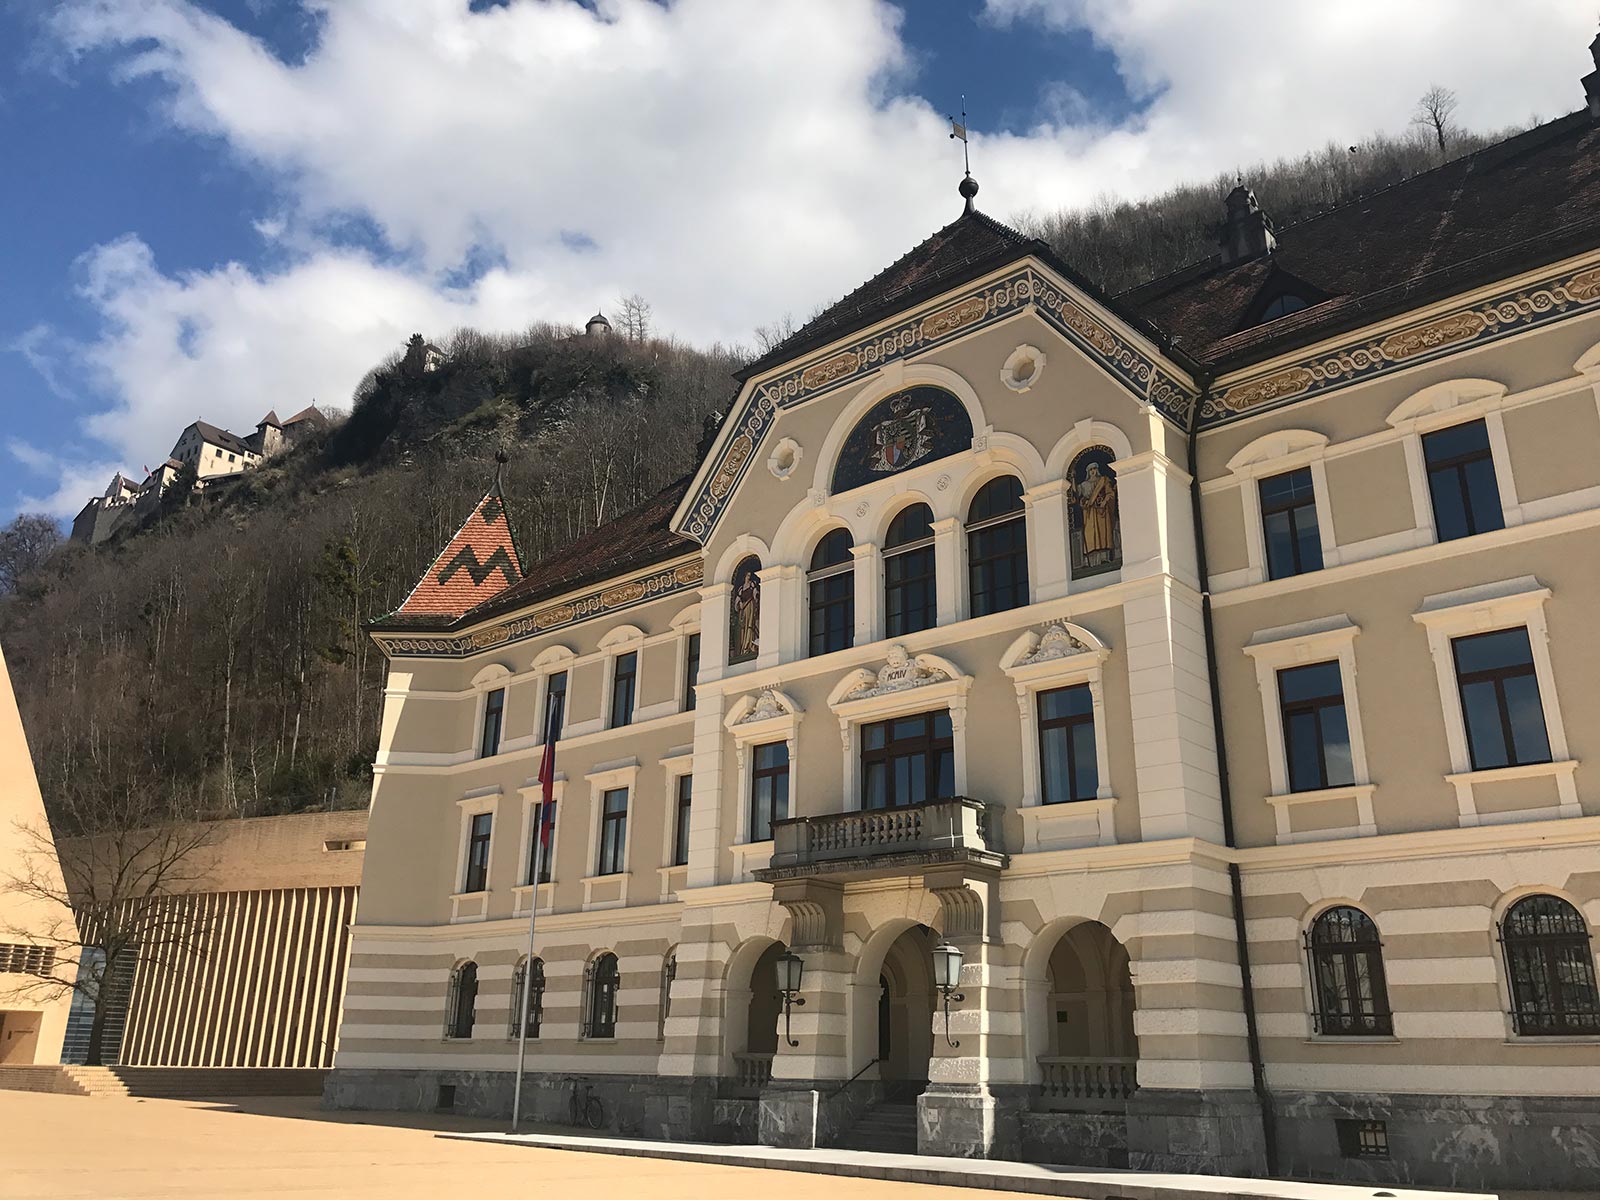 A government building in Vaduz, Liechtenstein. Cheltenham, Europe & Mum's 60th summed up in photos